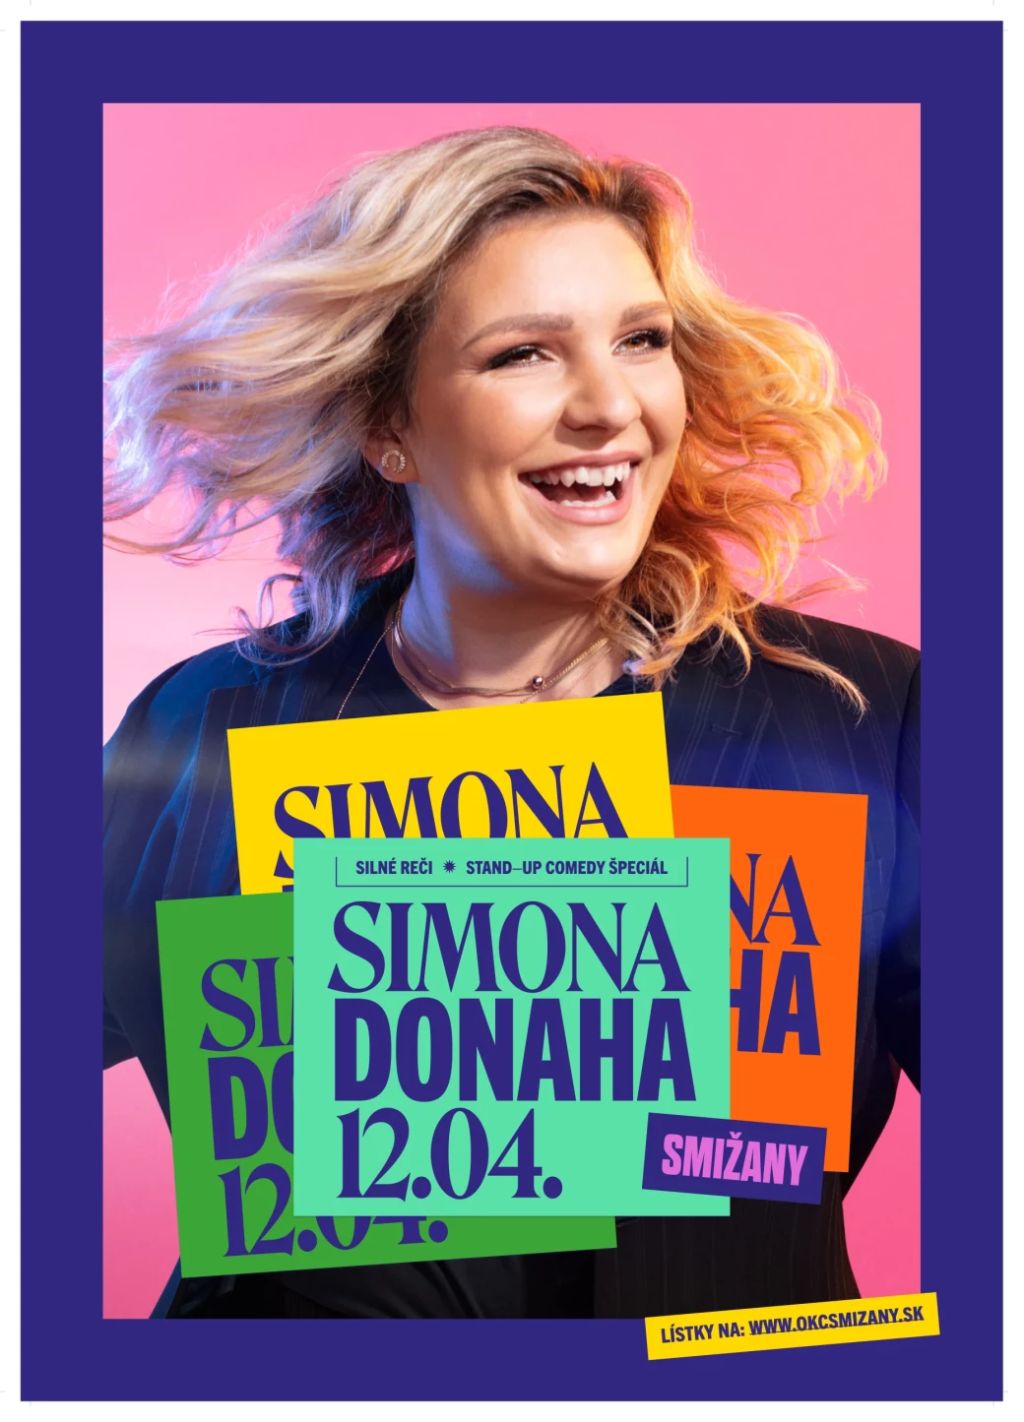 SIMONA: Donaha! | spisskanovaves.eu